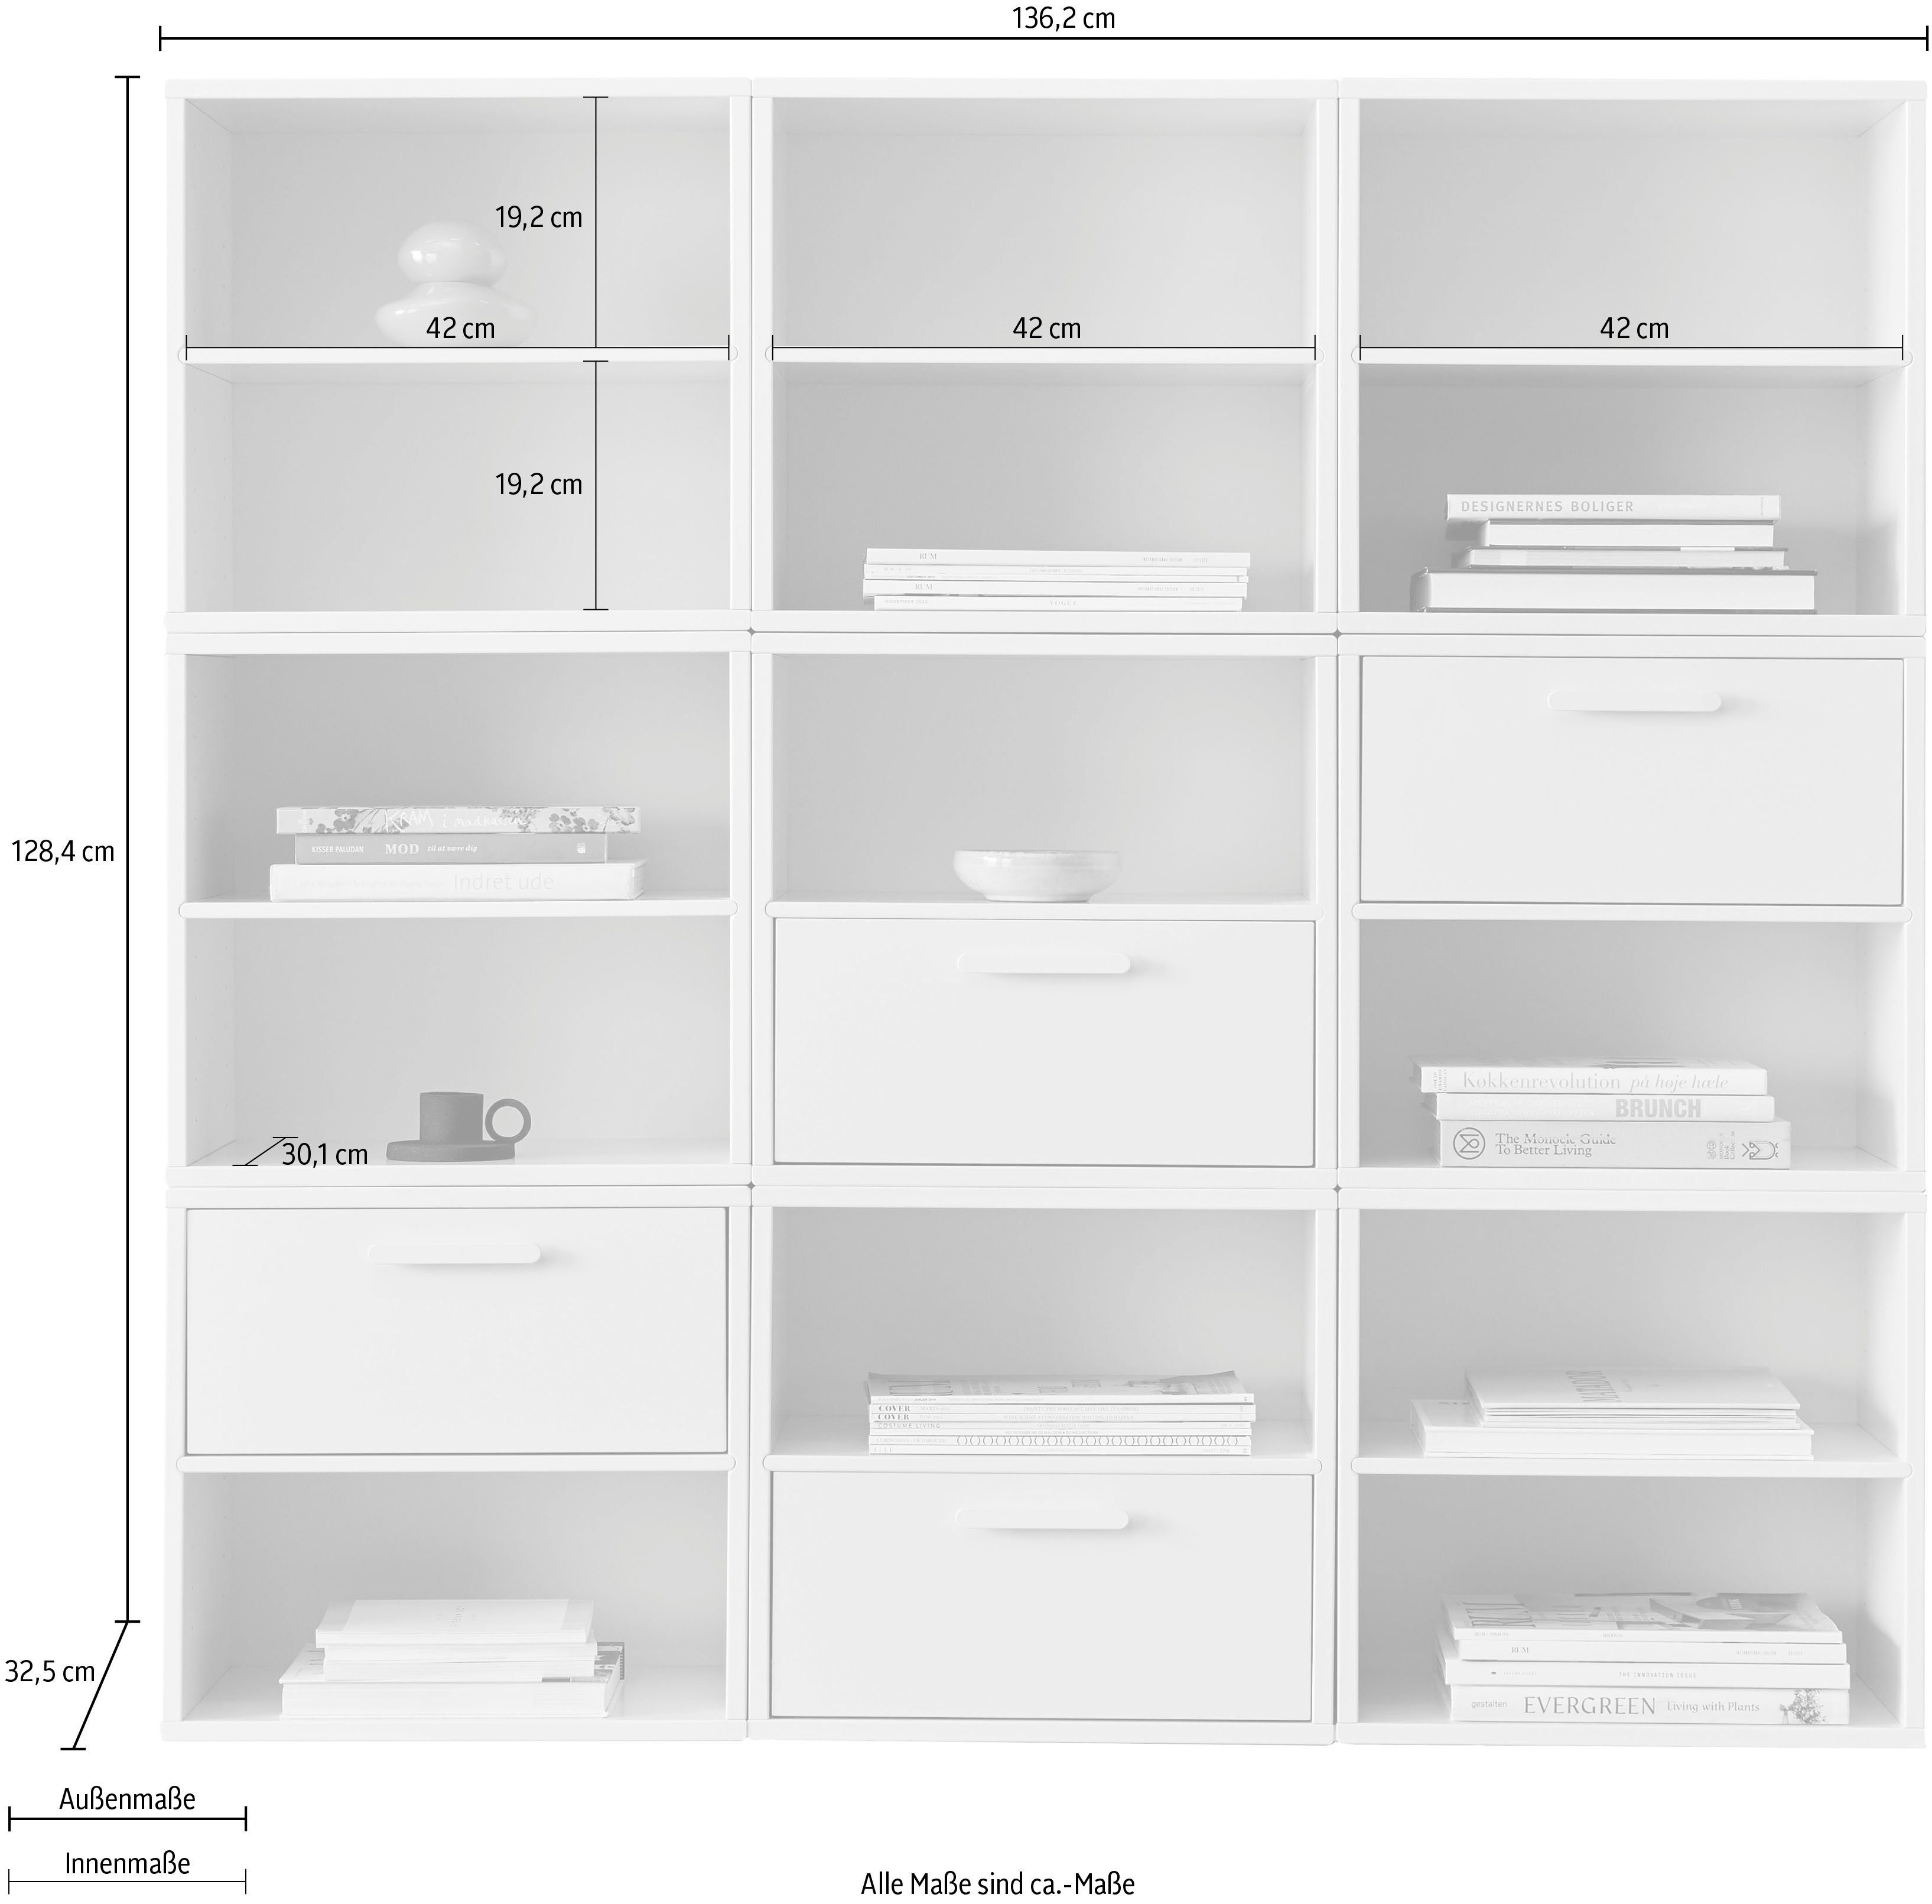 9 Hammel Furniture Keep Kombination Bücherregal by Modulen, Schubladen, Hammel, cm 4 136,2 Breite mit aus